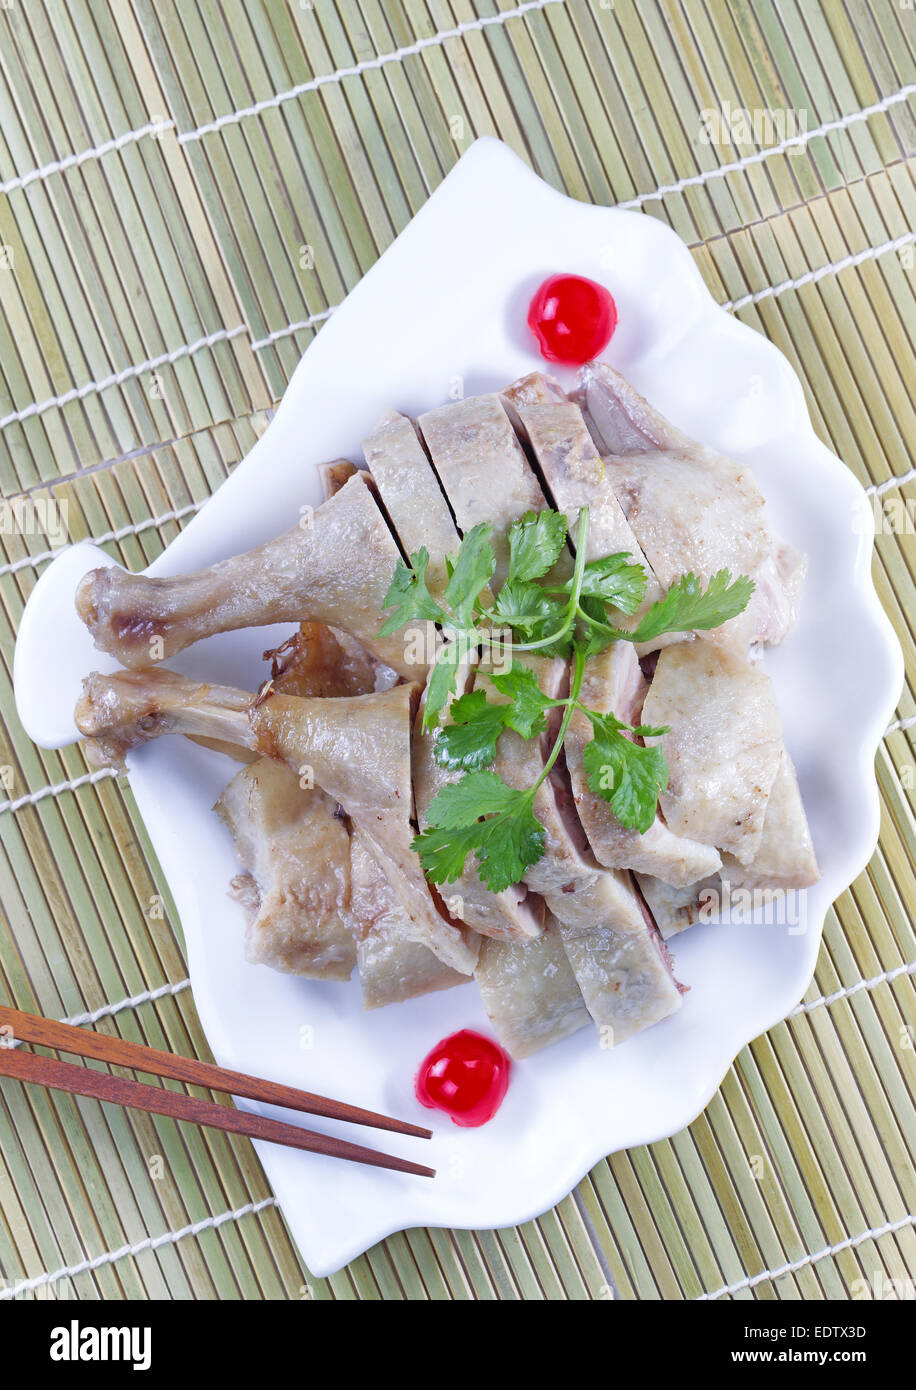 Verticale in alto visualizza immagine di cinesi il pollo cotto, prezzemolo, ciliegia e bacchette in guscio a forma di piastra bianca Foto Stock